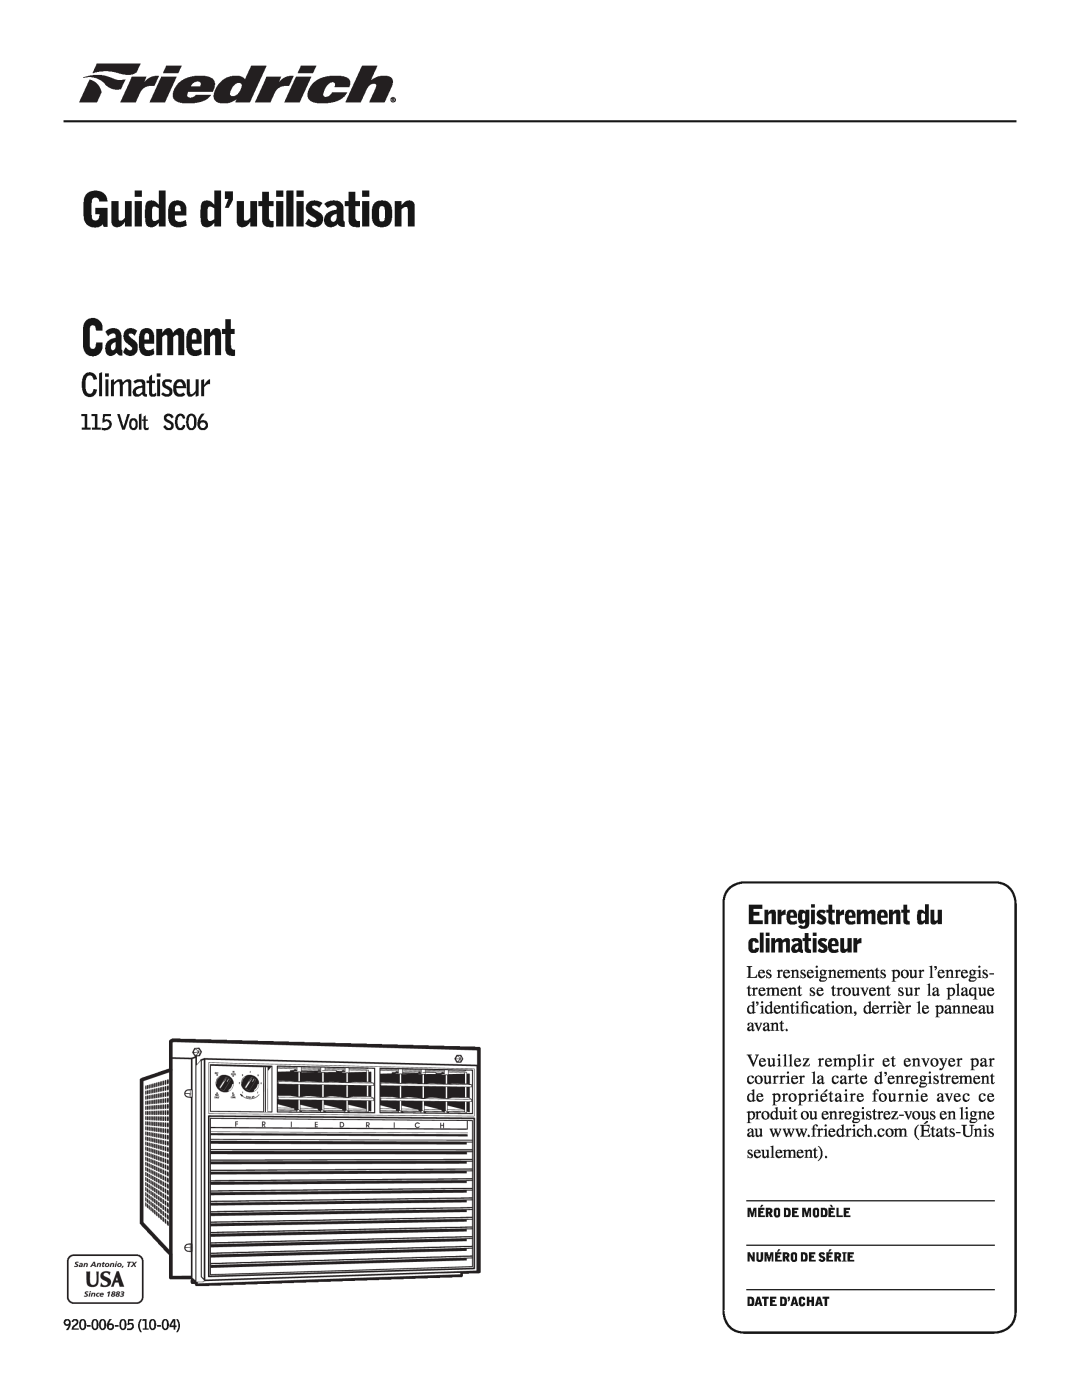 Friedrich manual Guide d’utilisation, Climatiseur, Casement, Enregistrement du climatiseur, Volt SC06 